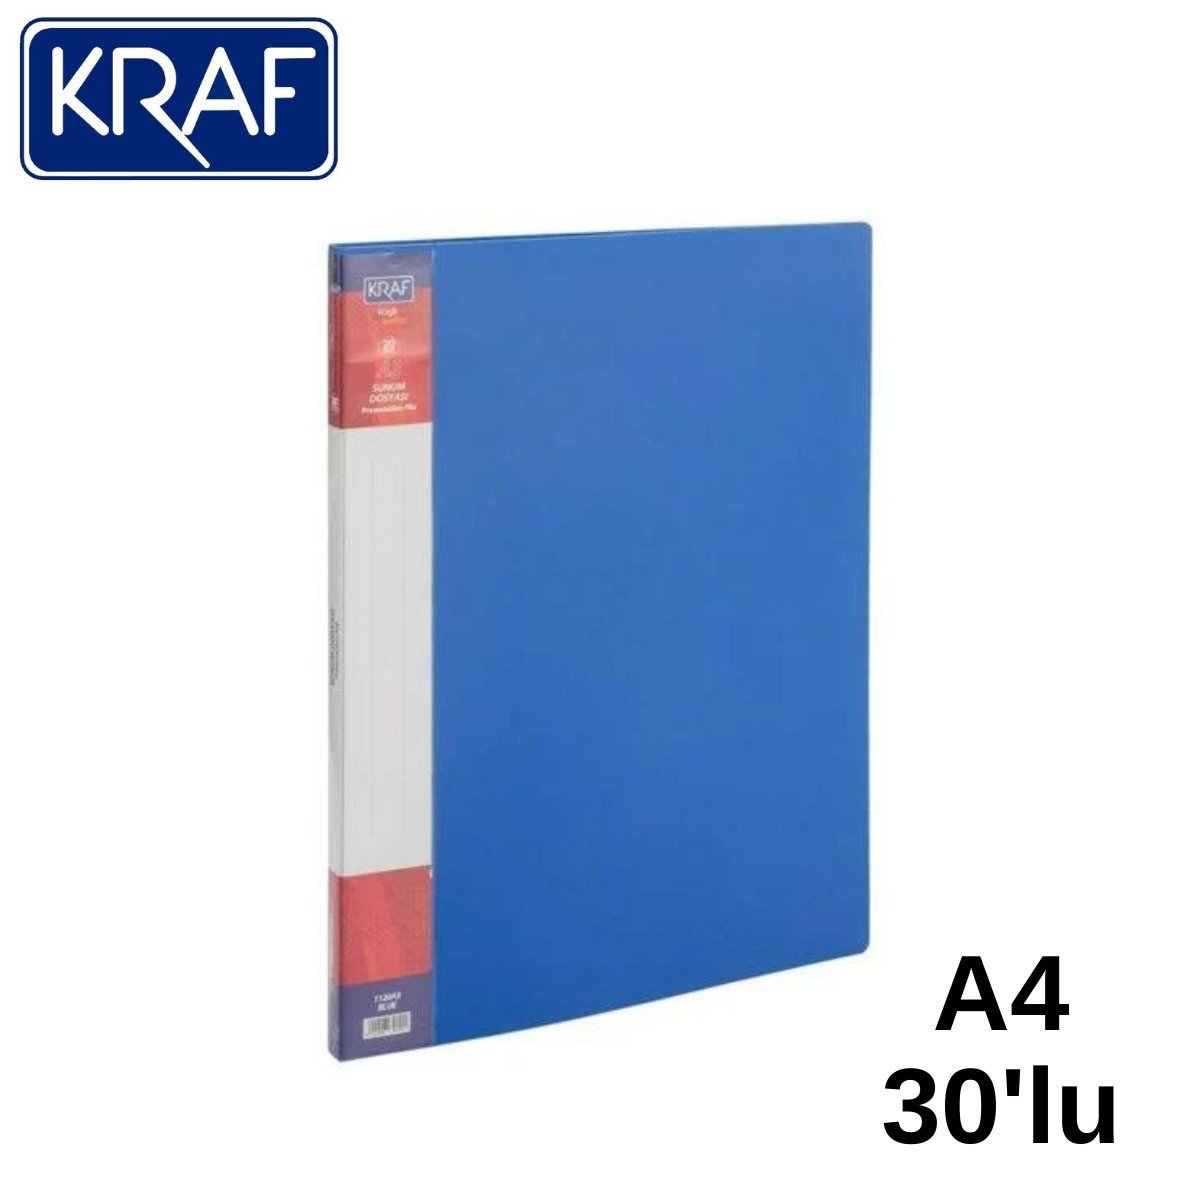 Kraf Sunum Dosyası A4 30lu Mavi